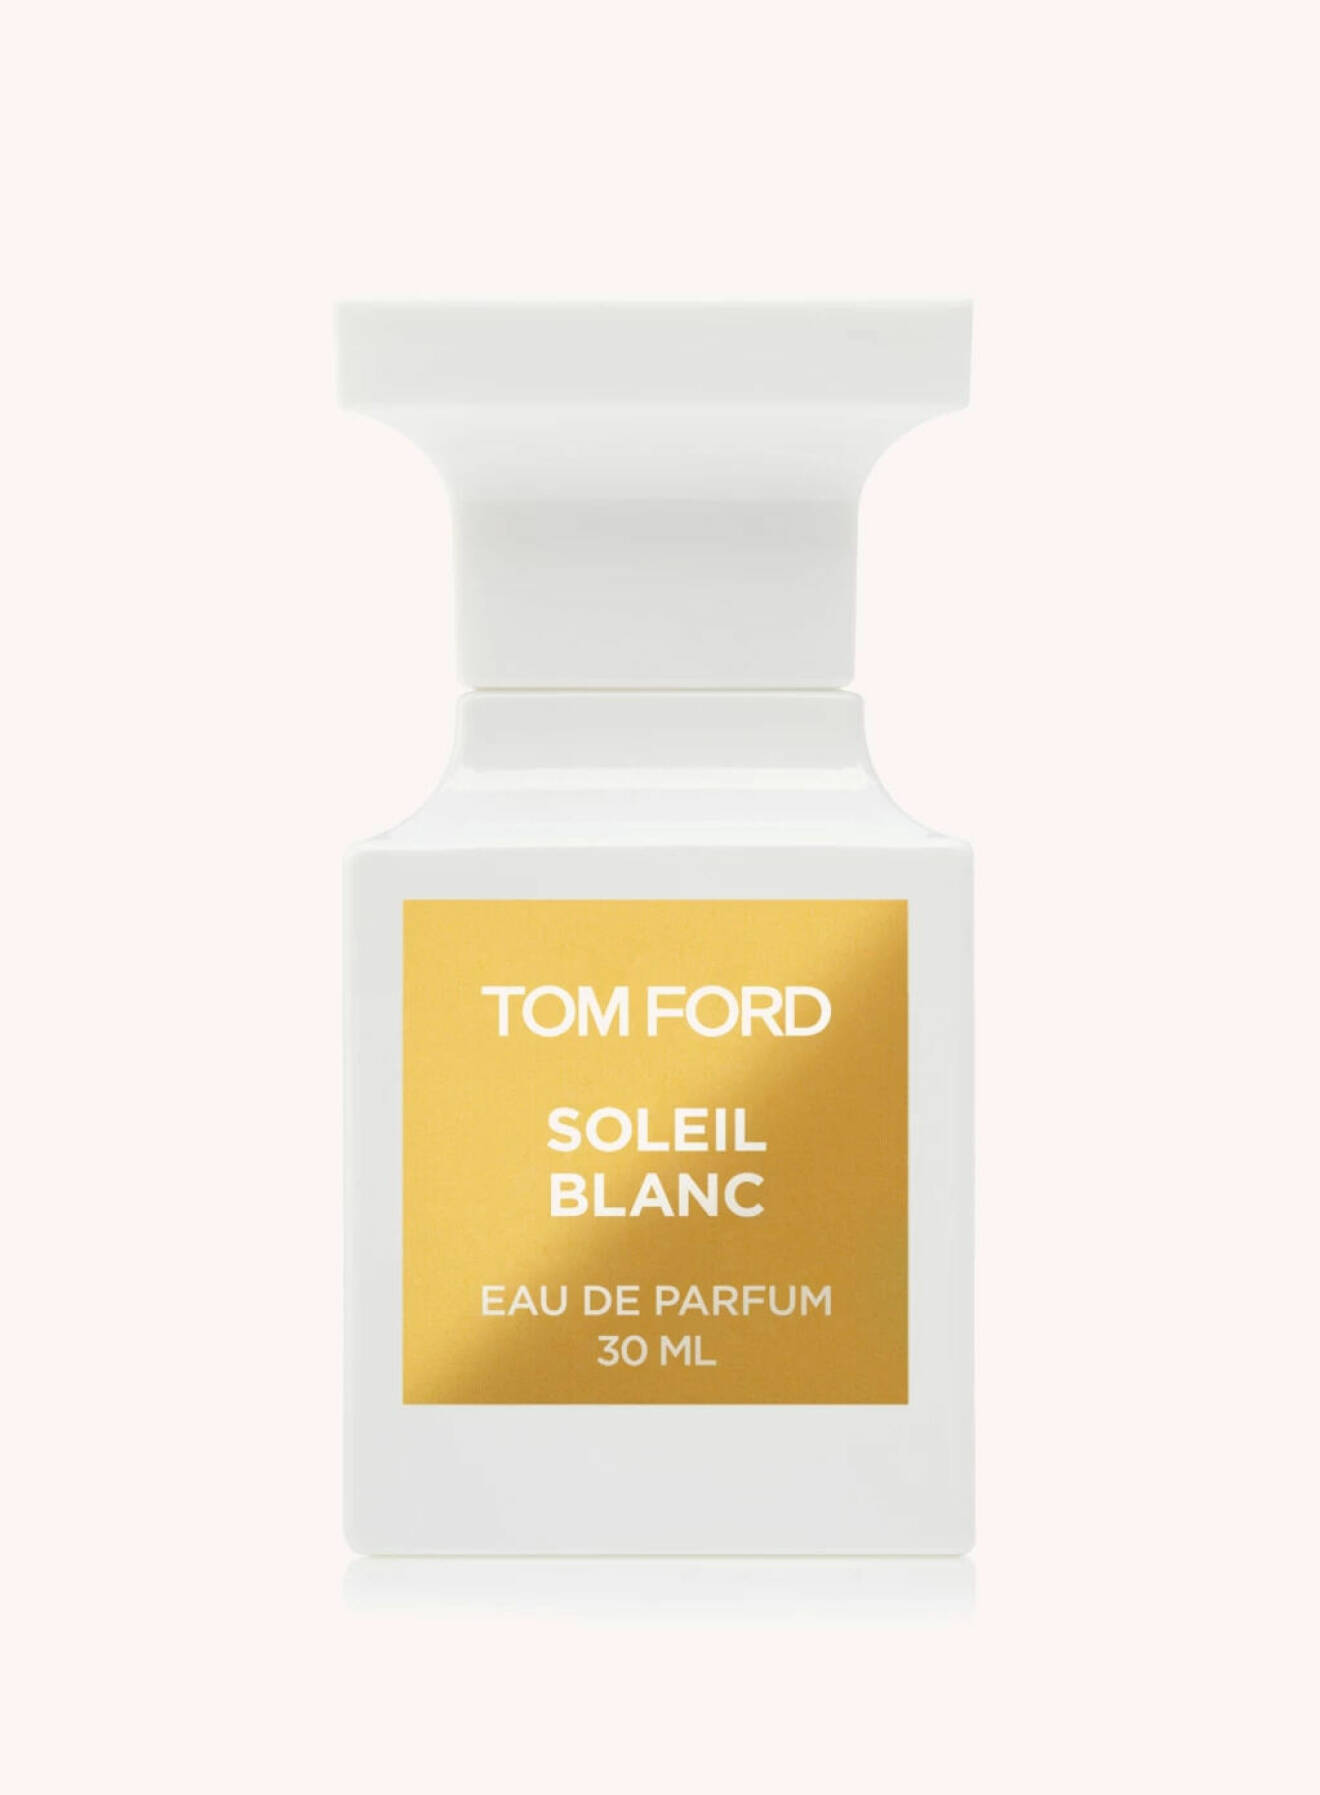 Soleil blanc av Tom Ford.